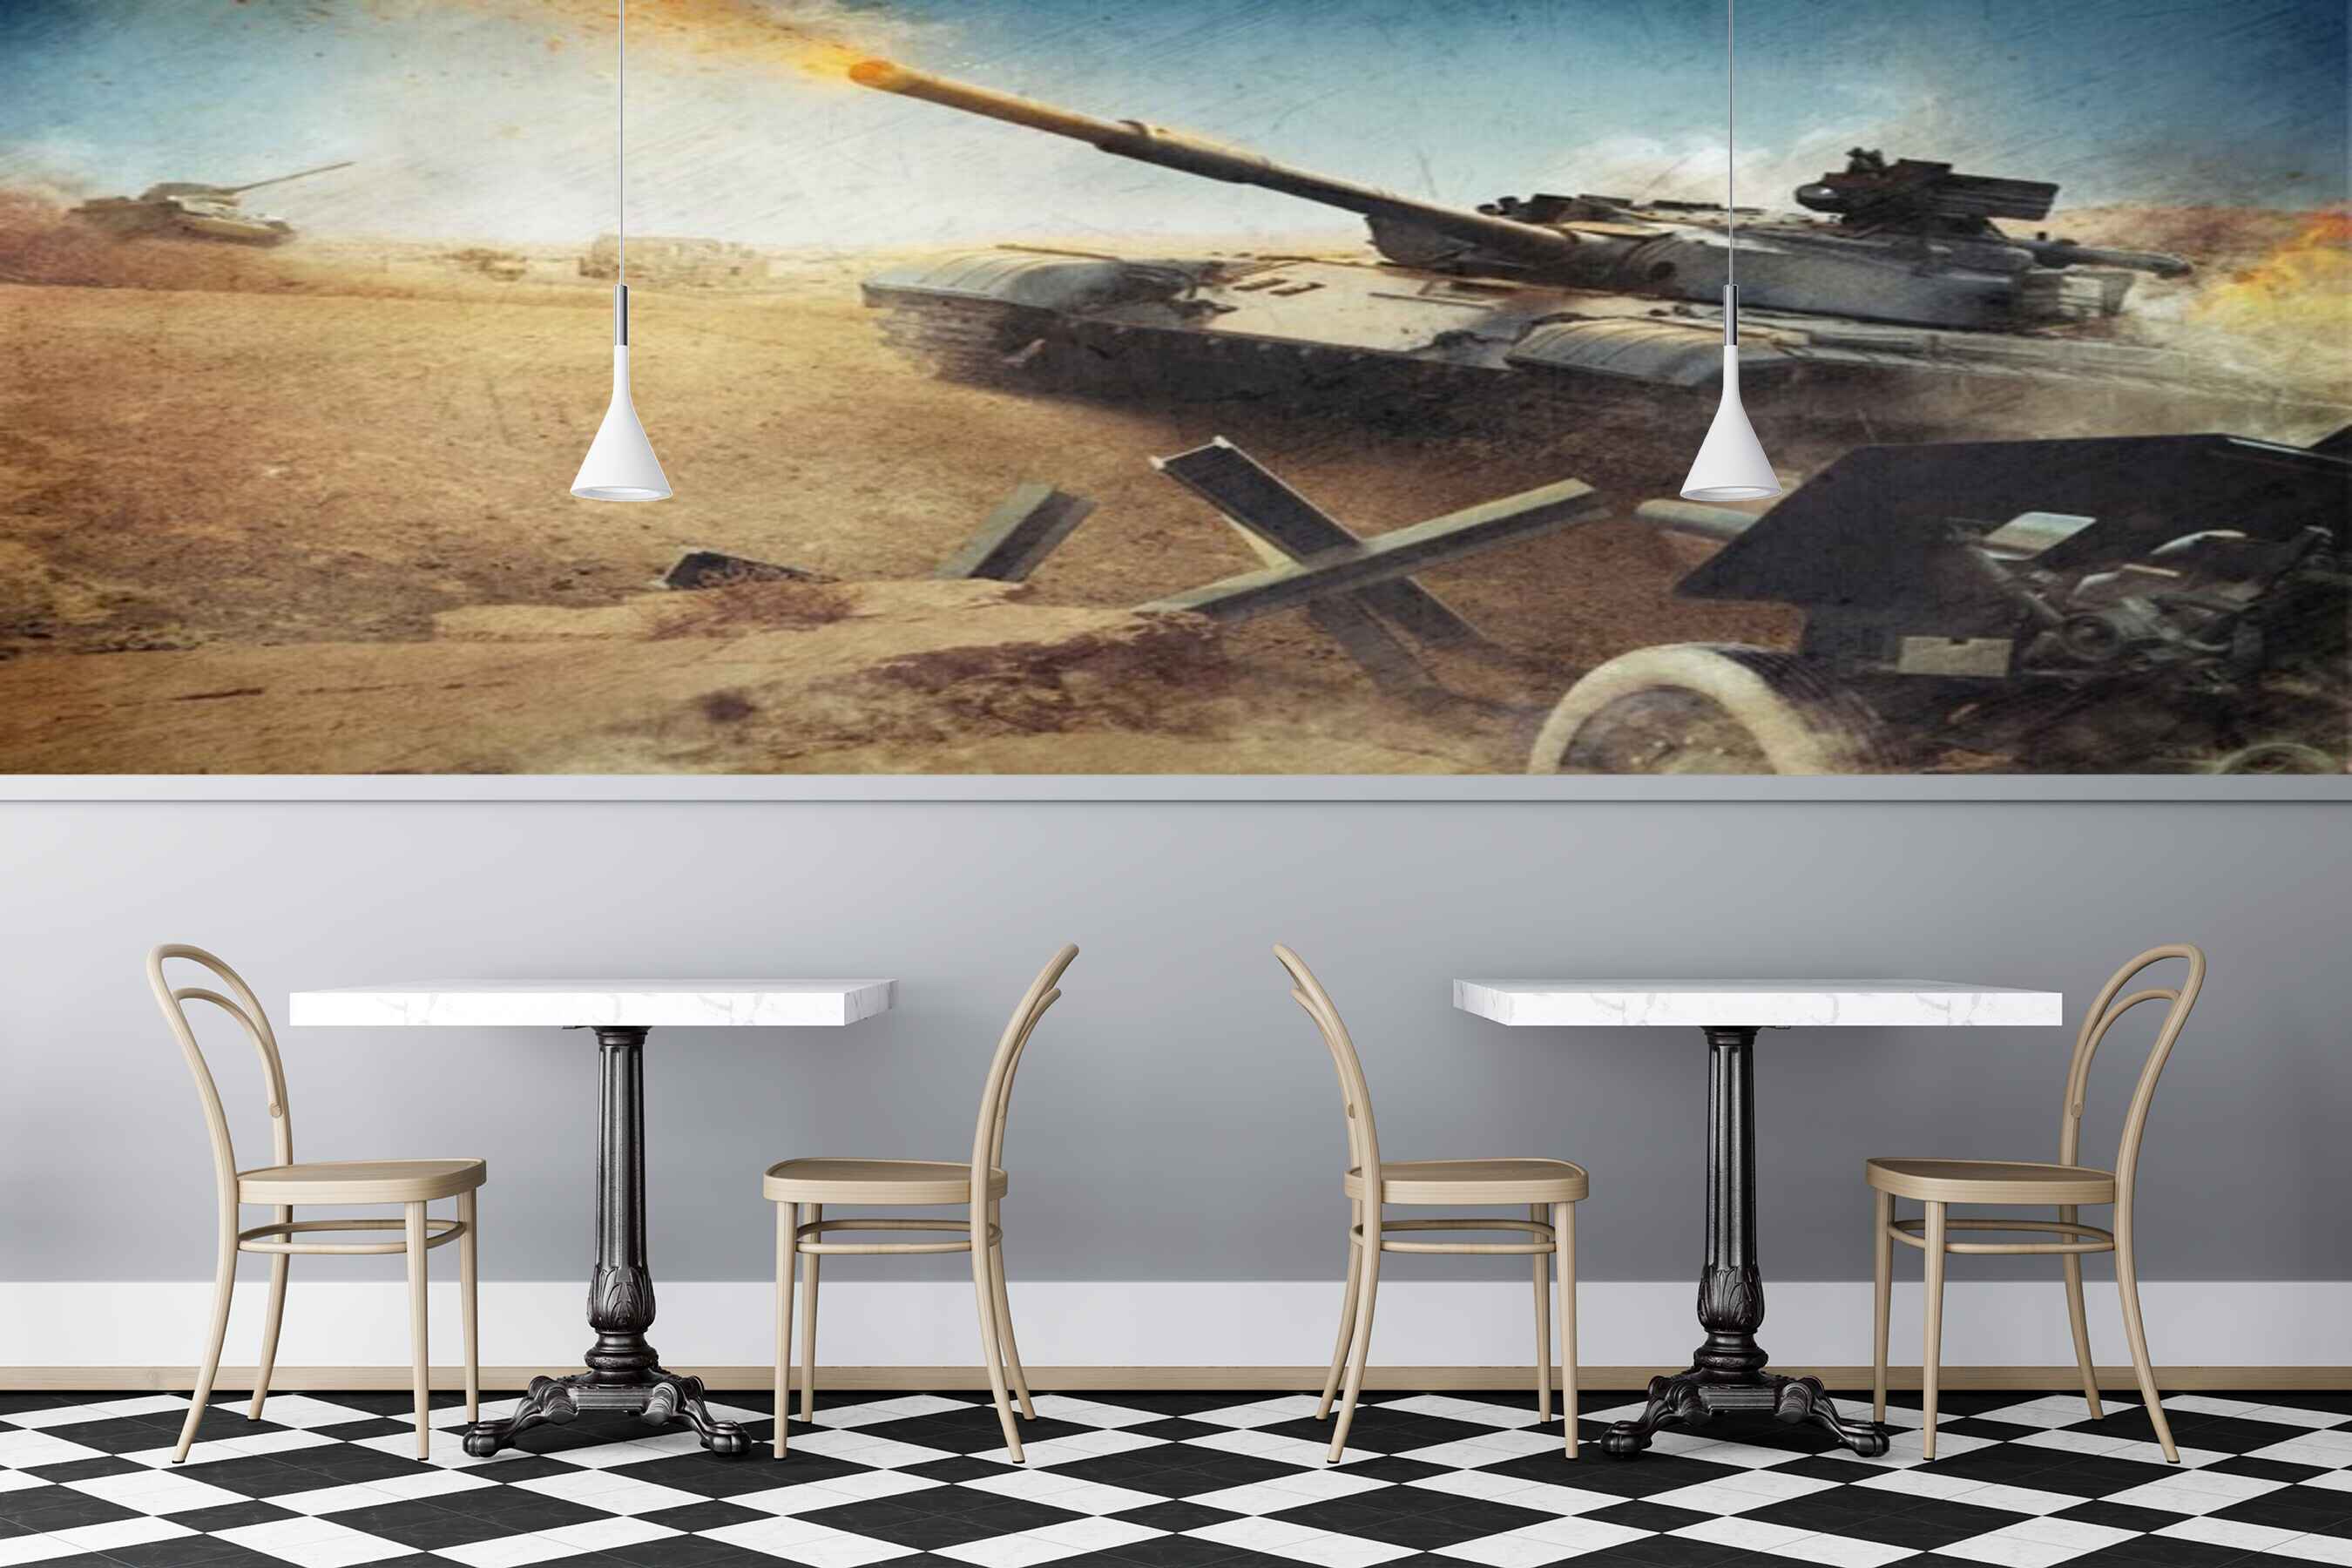 Avikalp MWZ2972 Military Tank Sandy Soil HD Wallpaper for Cafe Restaurant